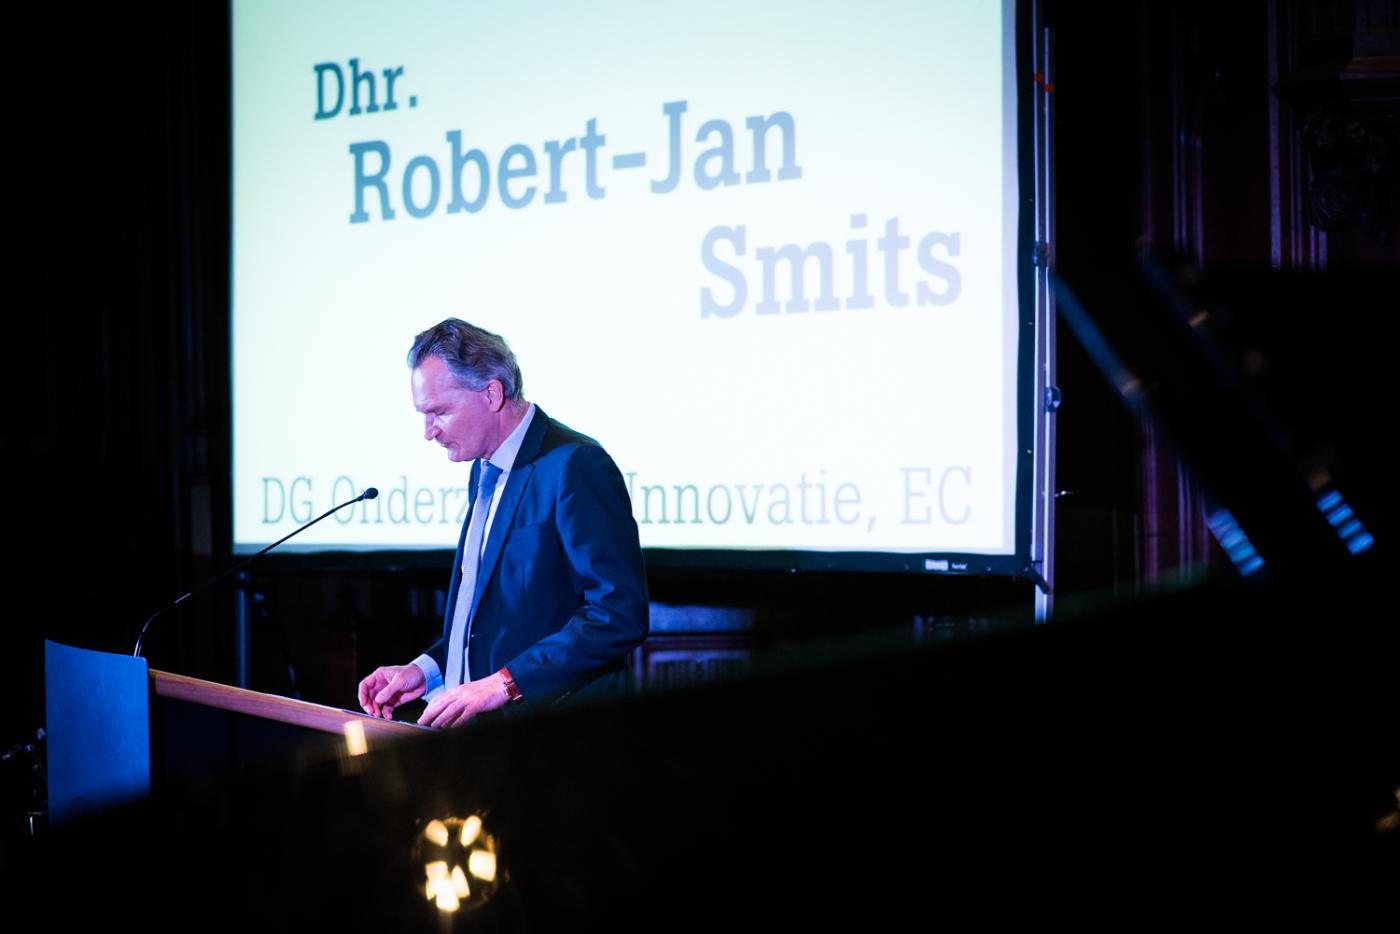 Robert-Jan Smits